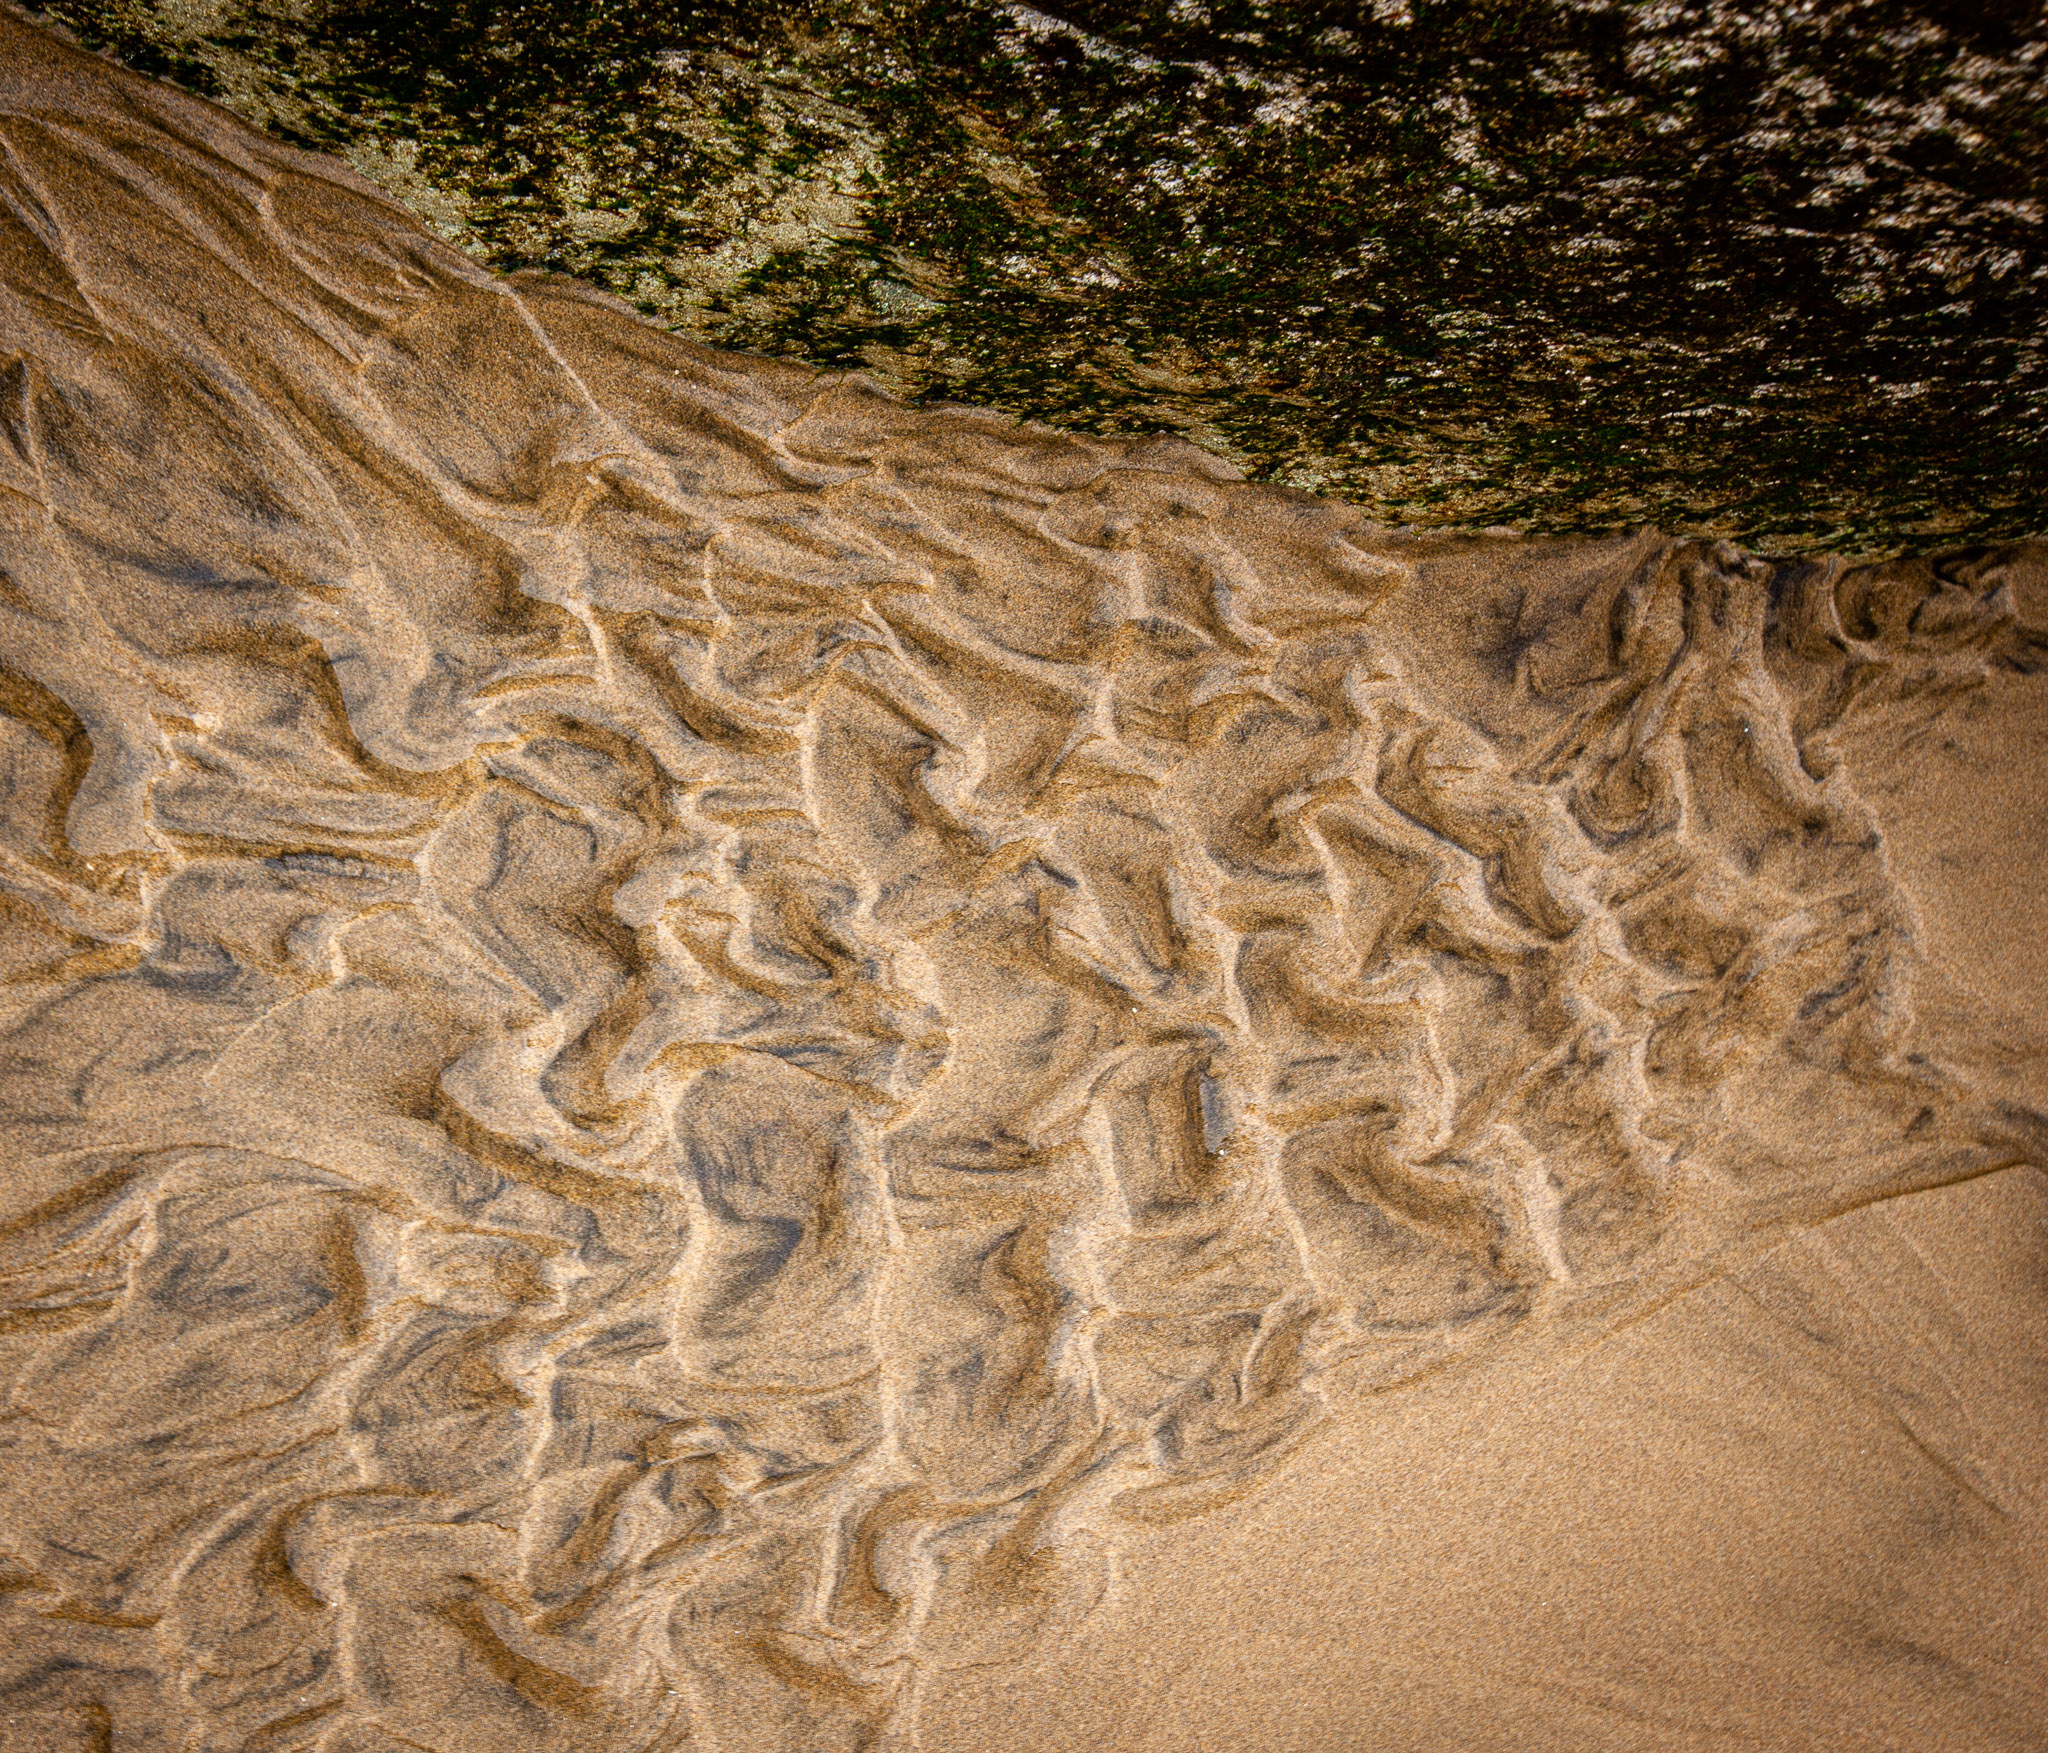 Sand pattern, Hug Point, Oregon Coast